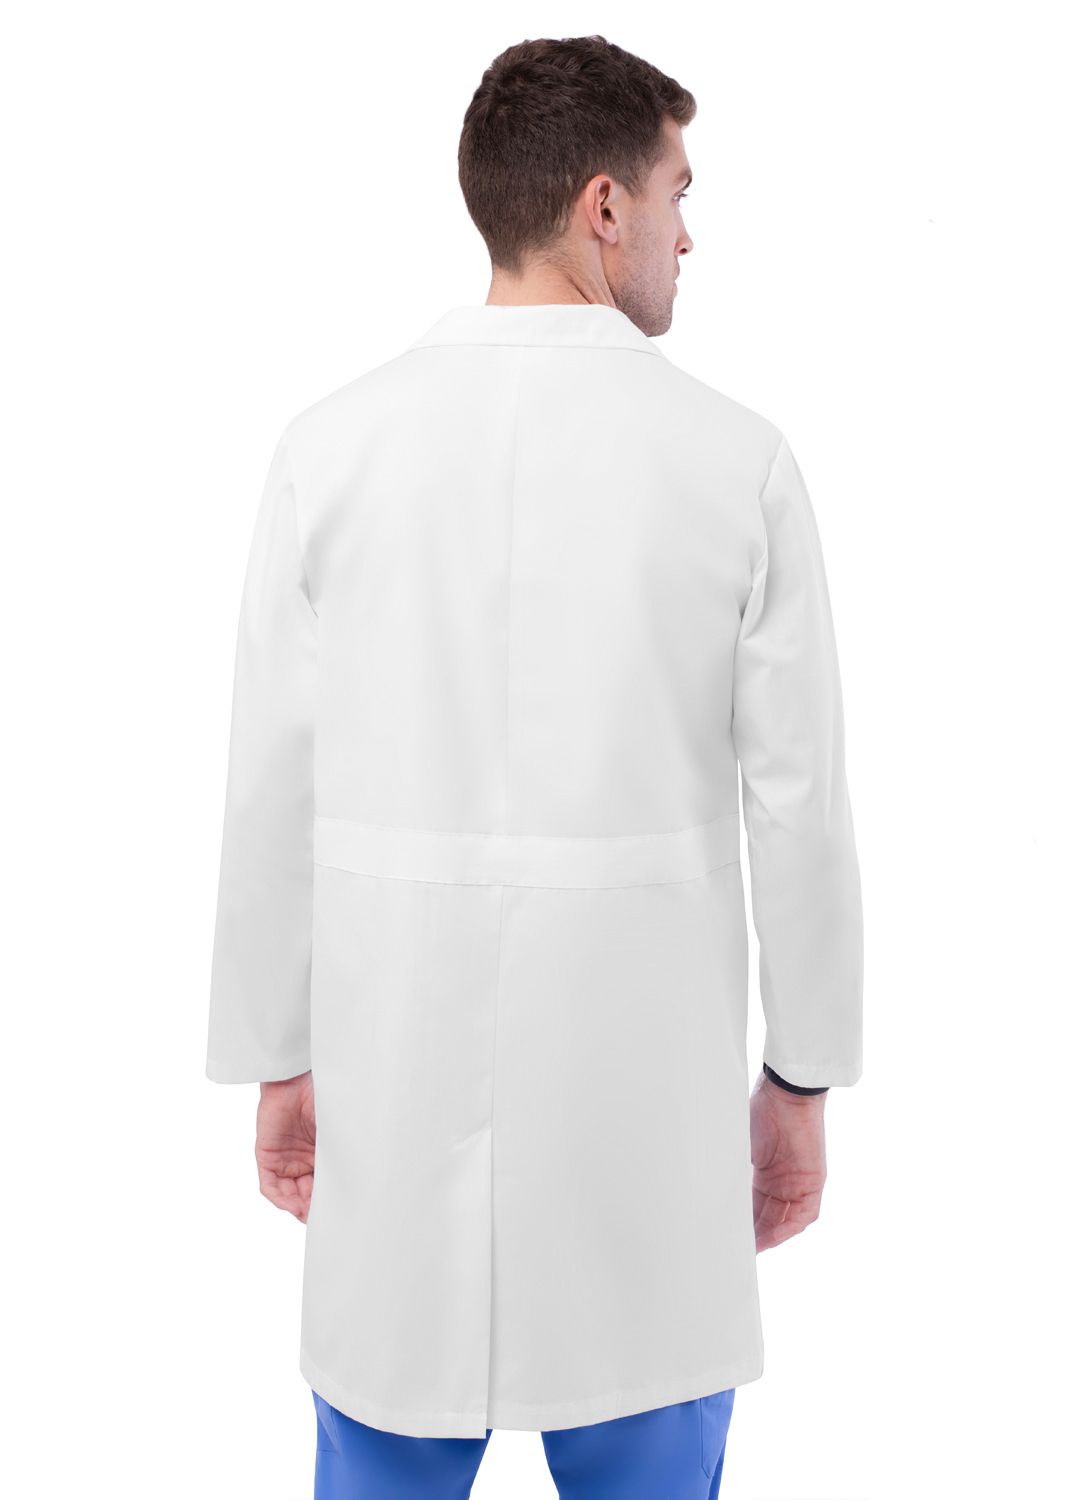 Adar Unisex 39" Midriff Lab Coat